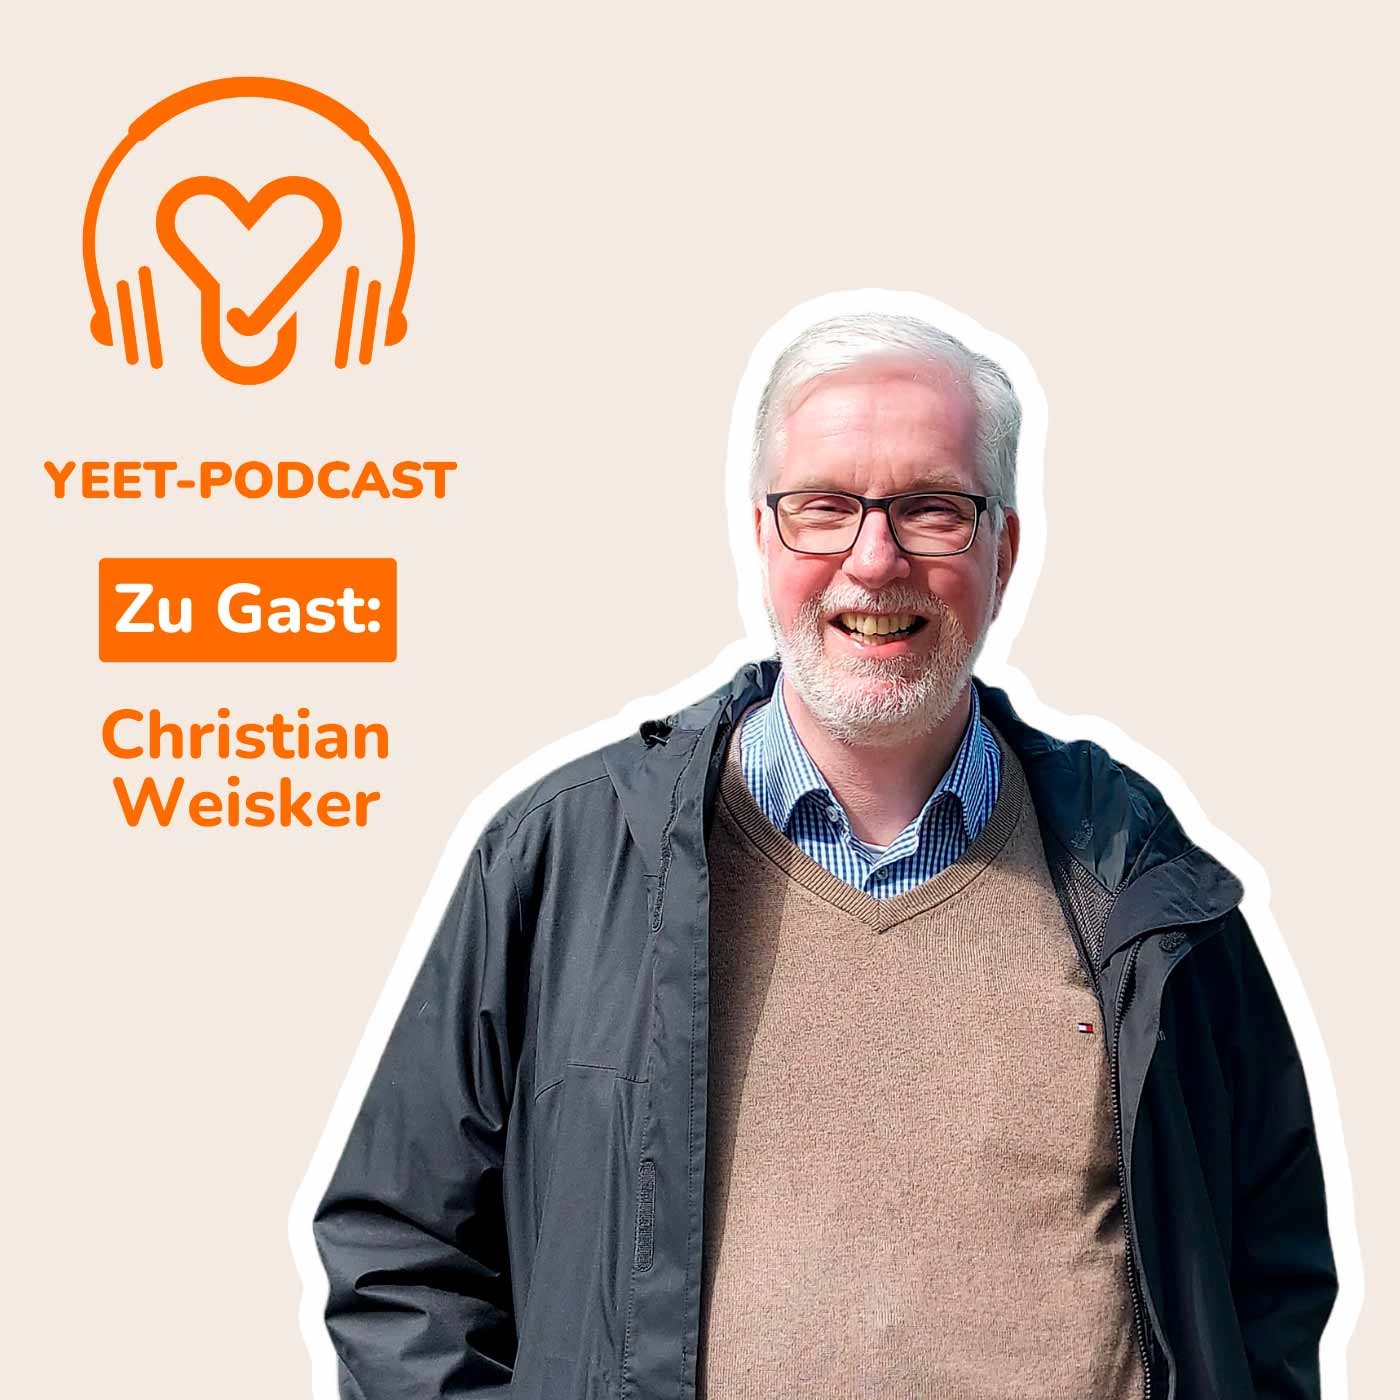 Zwischen Fragen und Shitstorms: Der Info-Service der Evangelischen Kirche - mit Christian Weisker